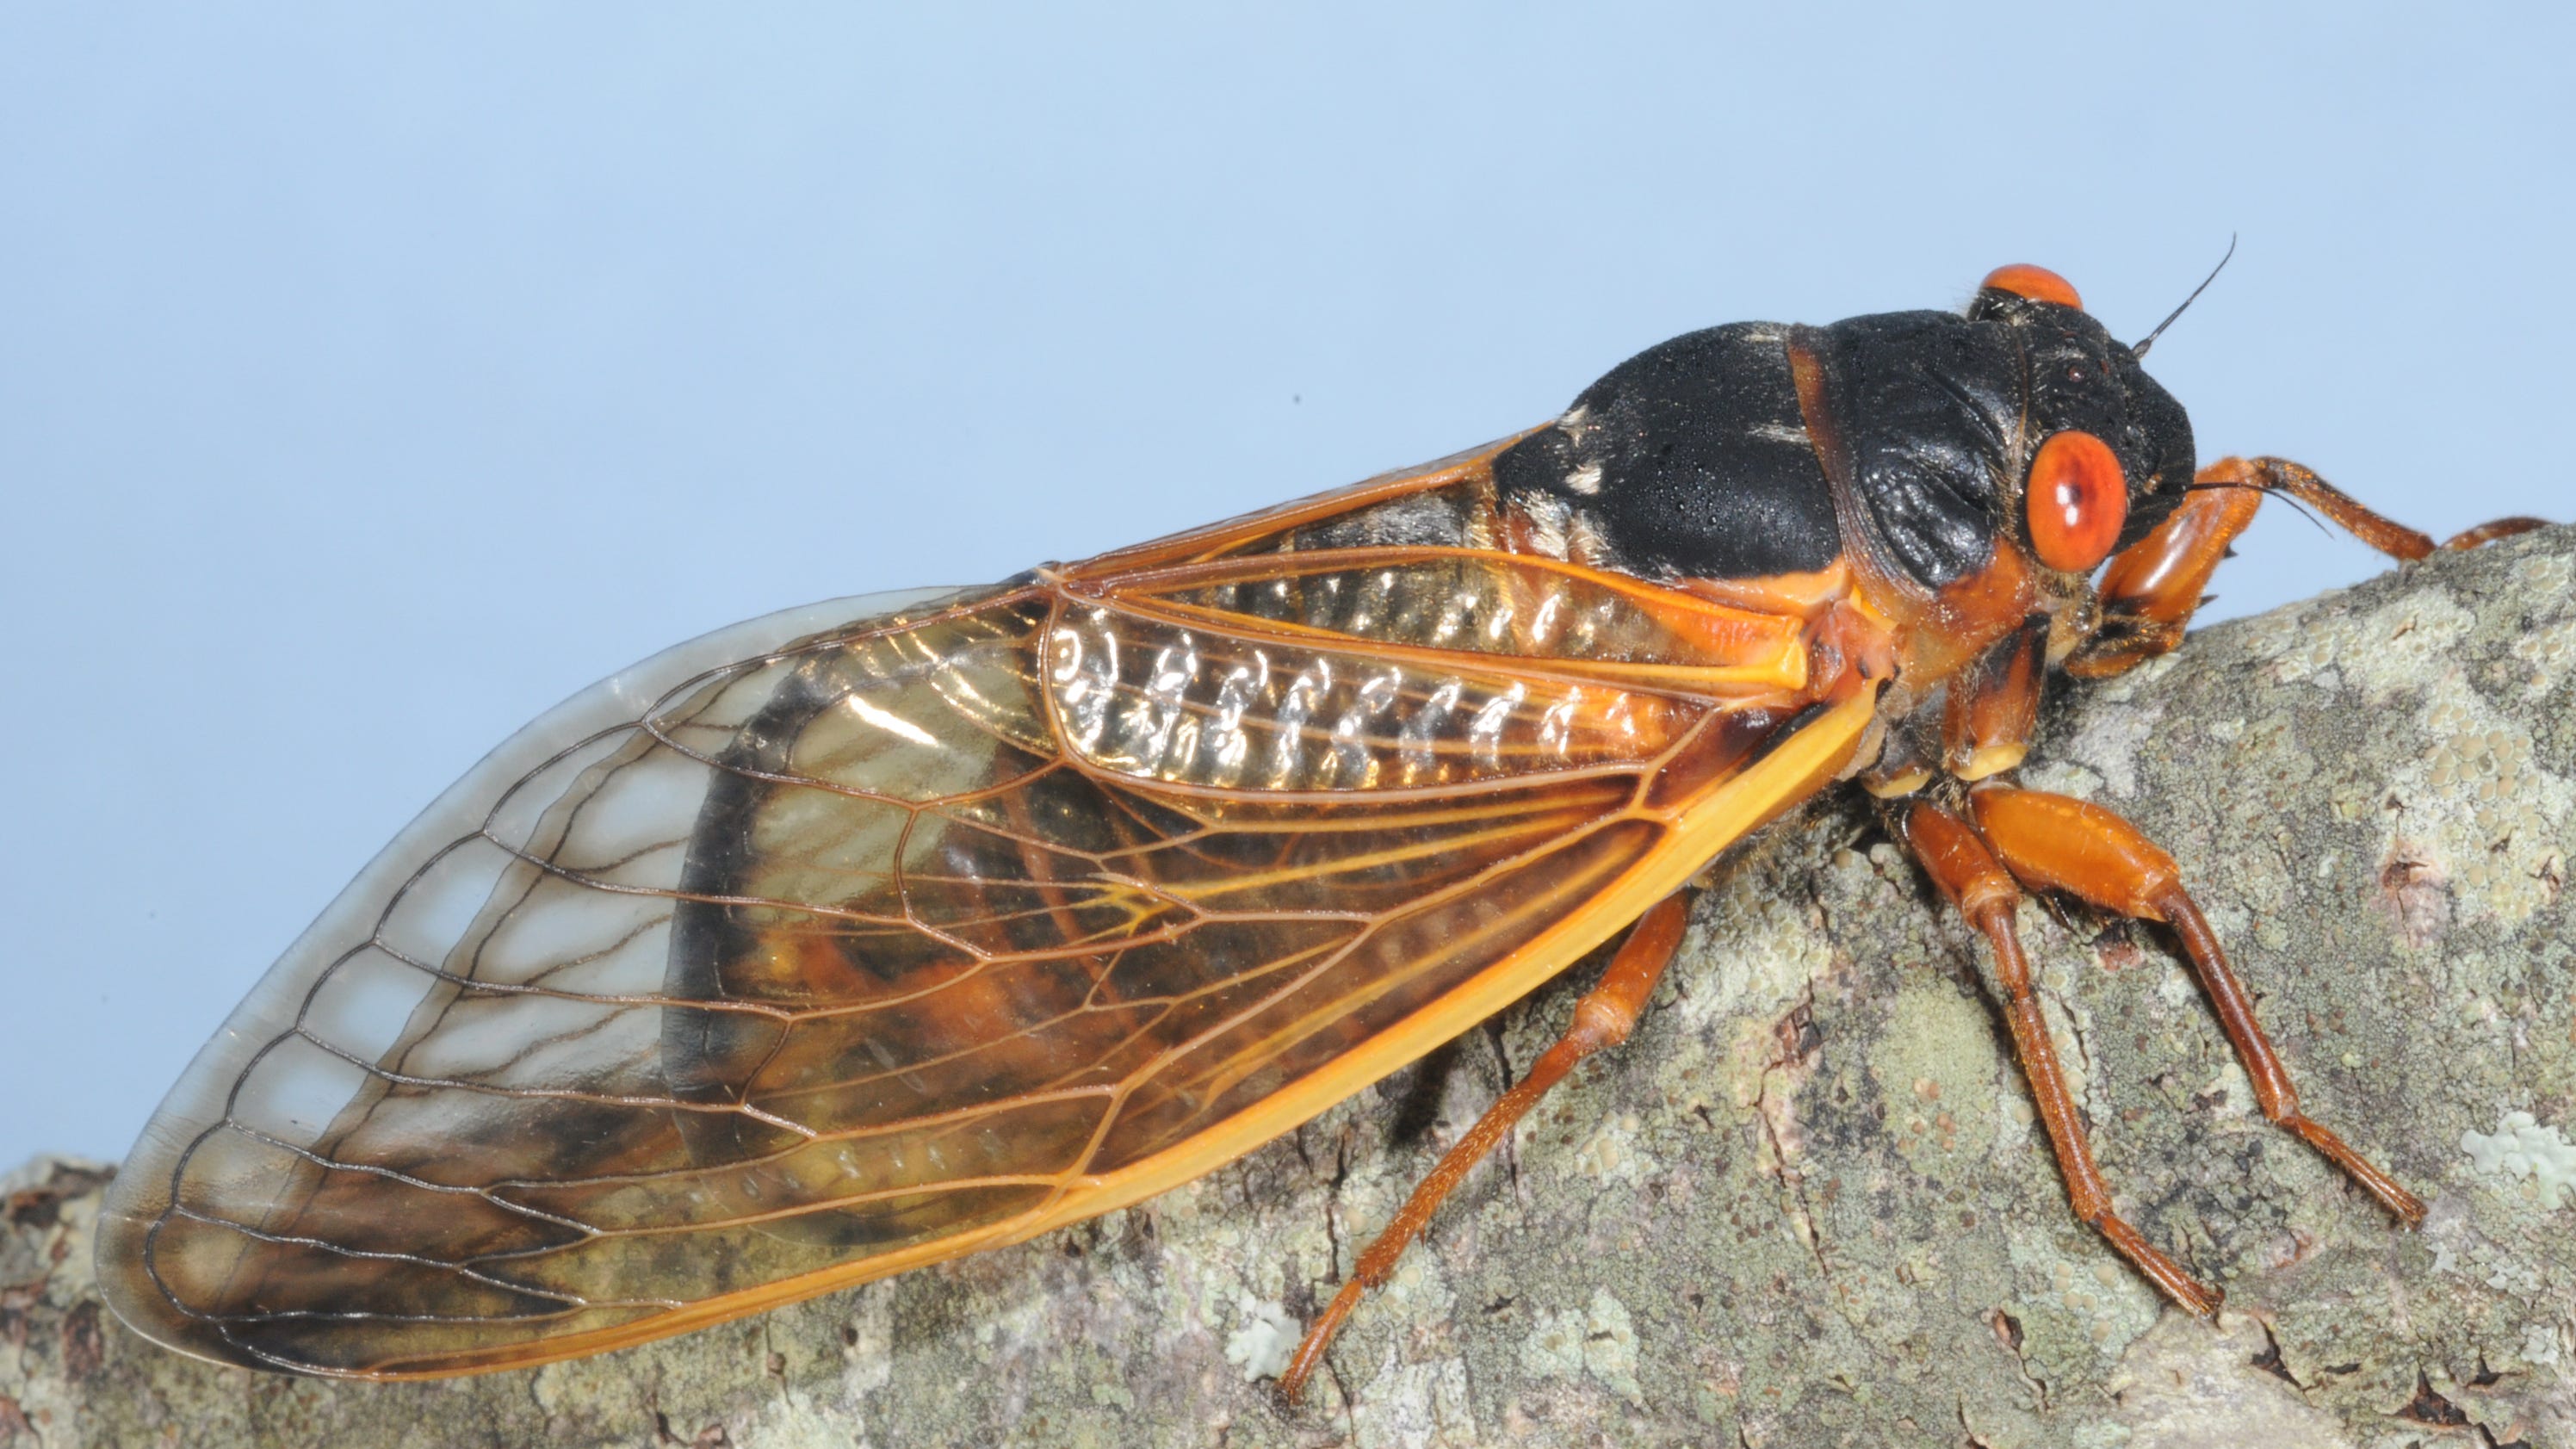 13year cicadas emerge, ready for love